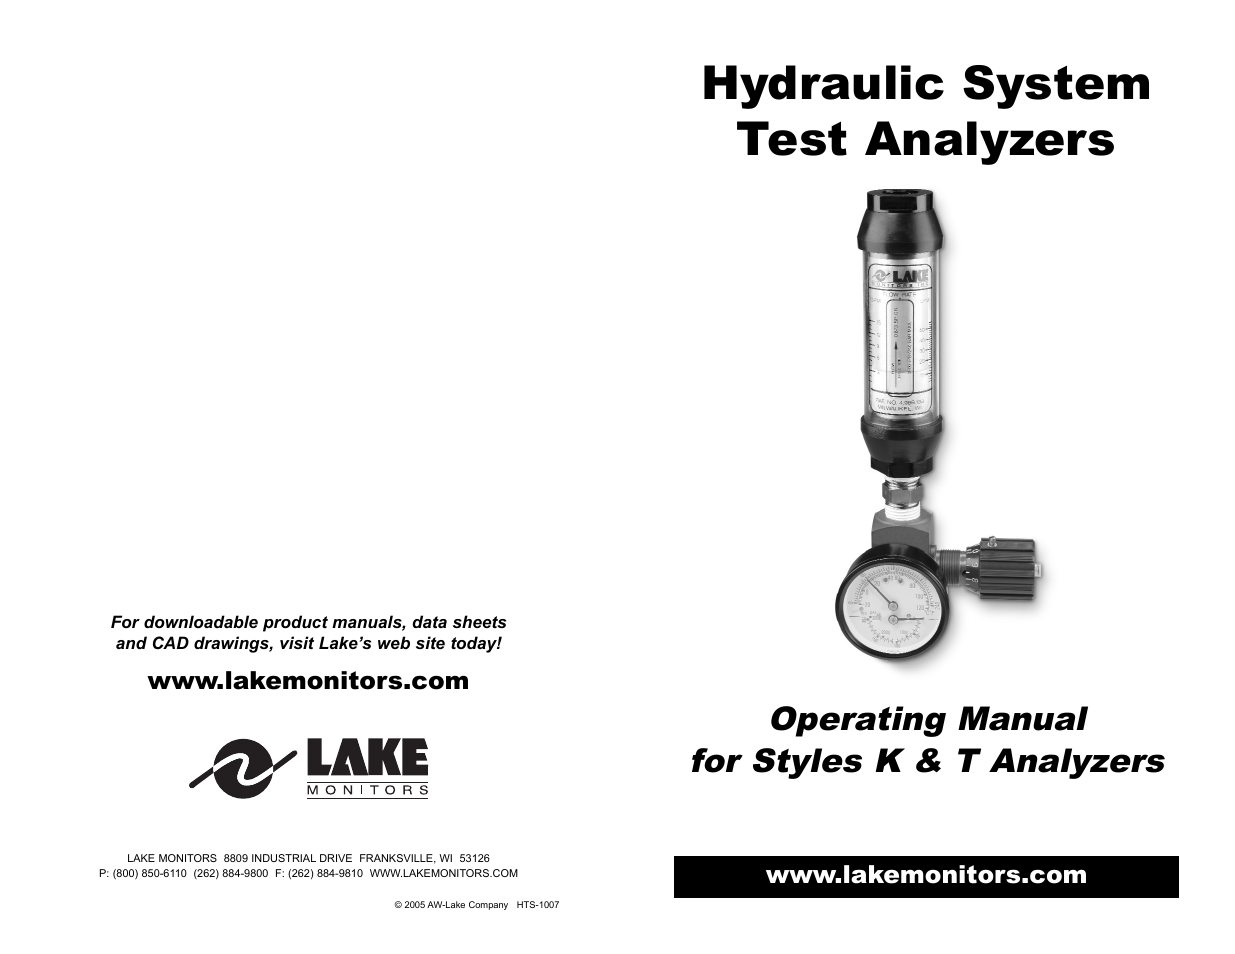 Hydraulic System Test Analyzers (Style K & T)